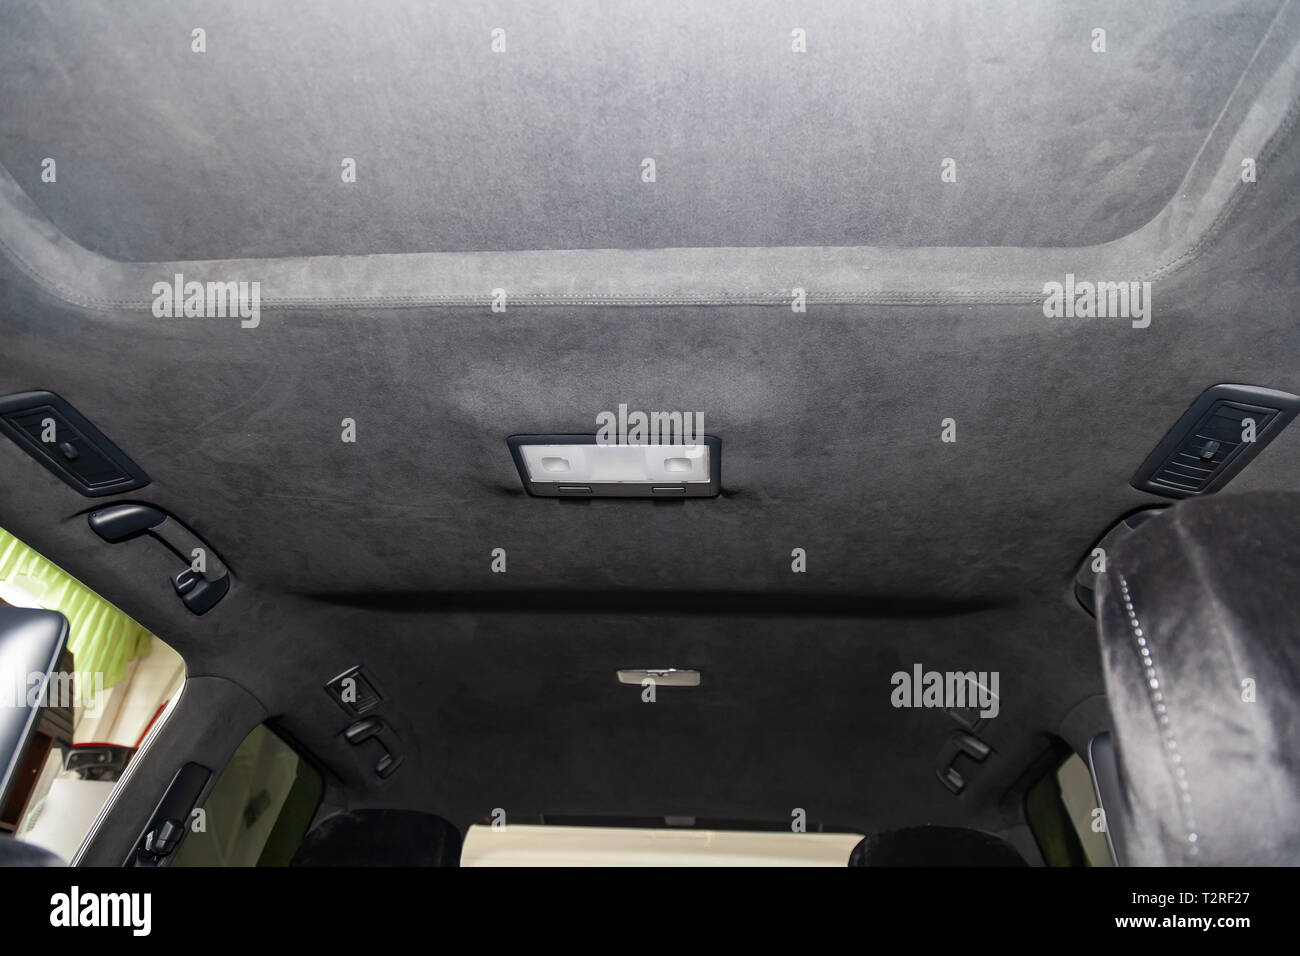 Die Decke der SUV-Auto von Schwarz weiches Material alkantara in der  Werkstatt für Tuning und Styling der interiorof die Fahrzeuge mit  Schiebedach. Au Stockfotografie - Alamy